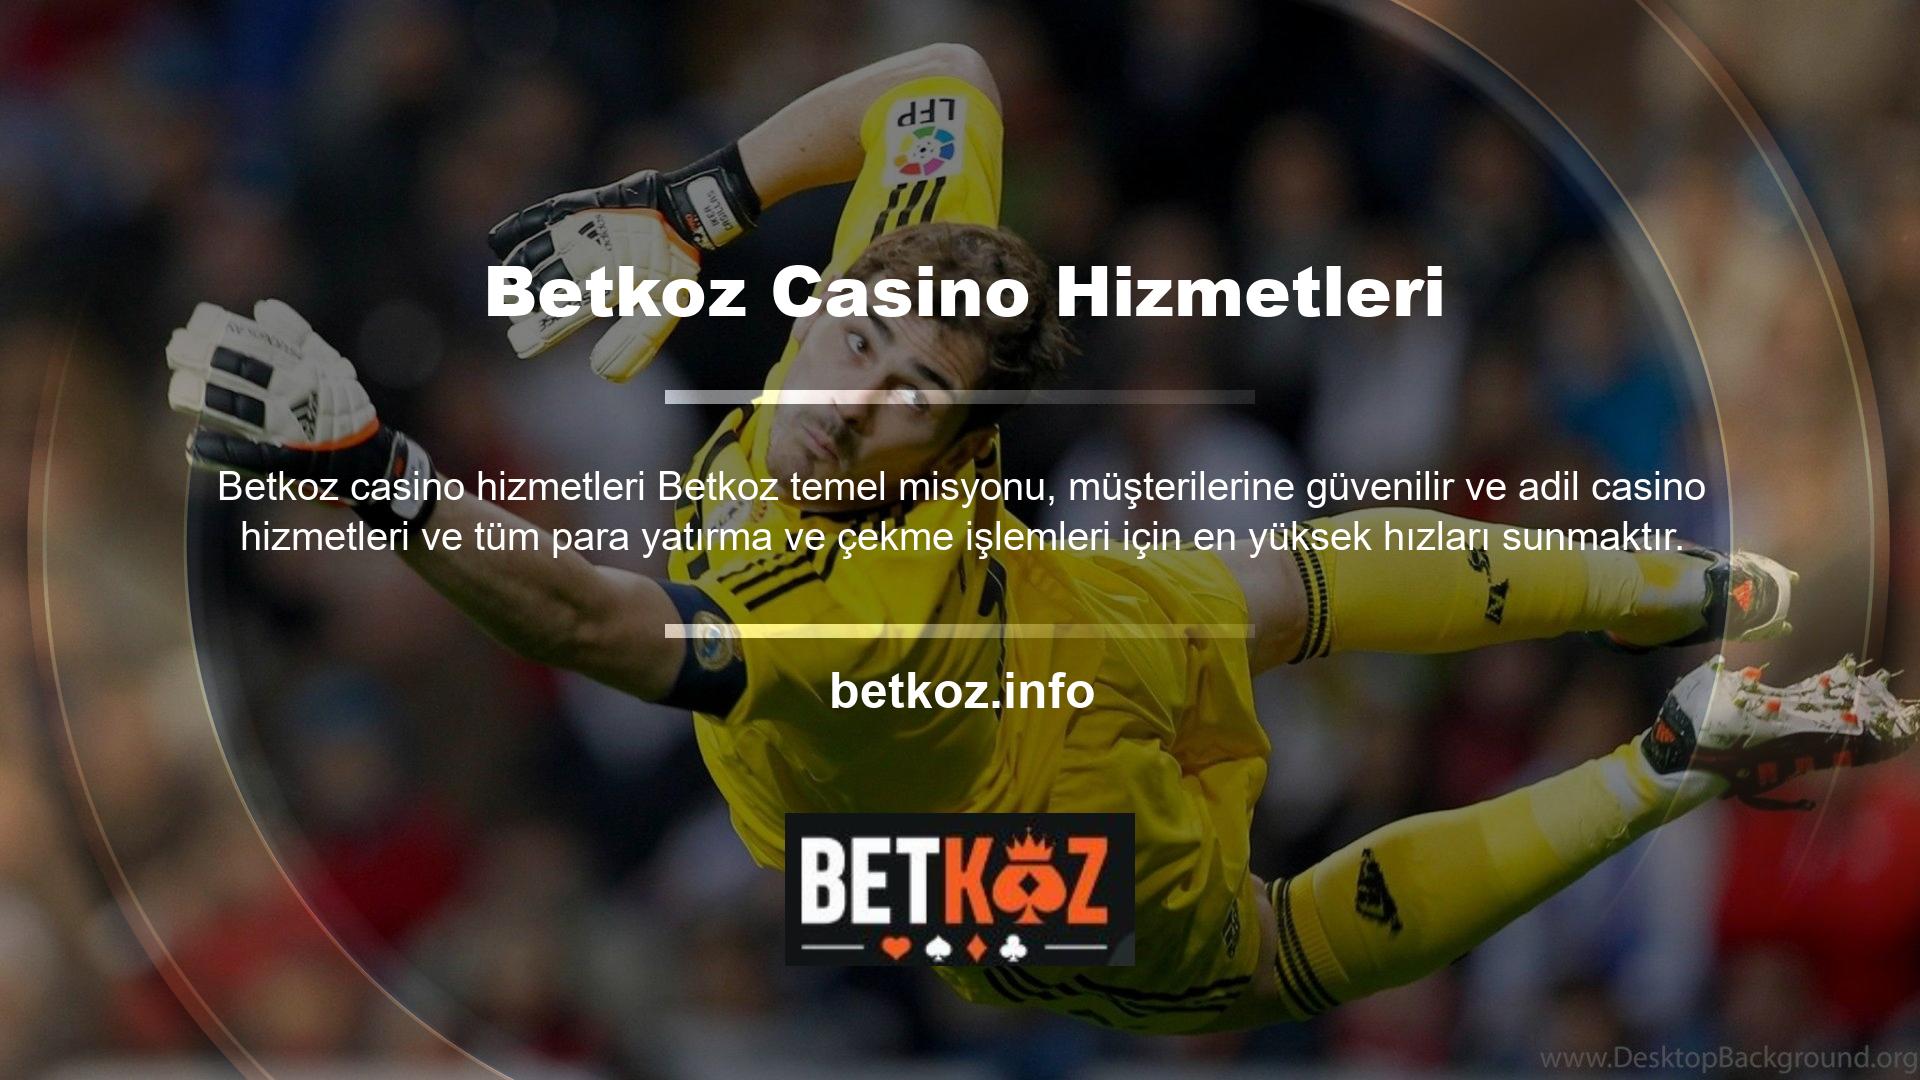 Betkoz web sitesi en son giriş adresi bilgileri güncellenerek güncellenmiştir